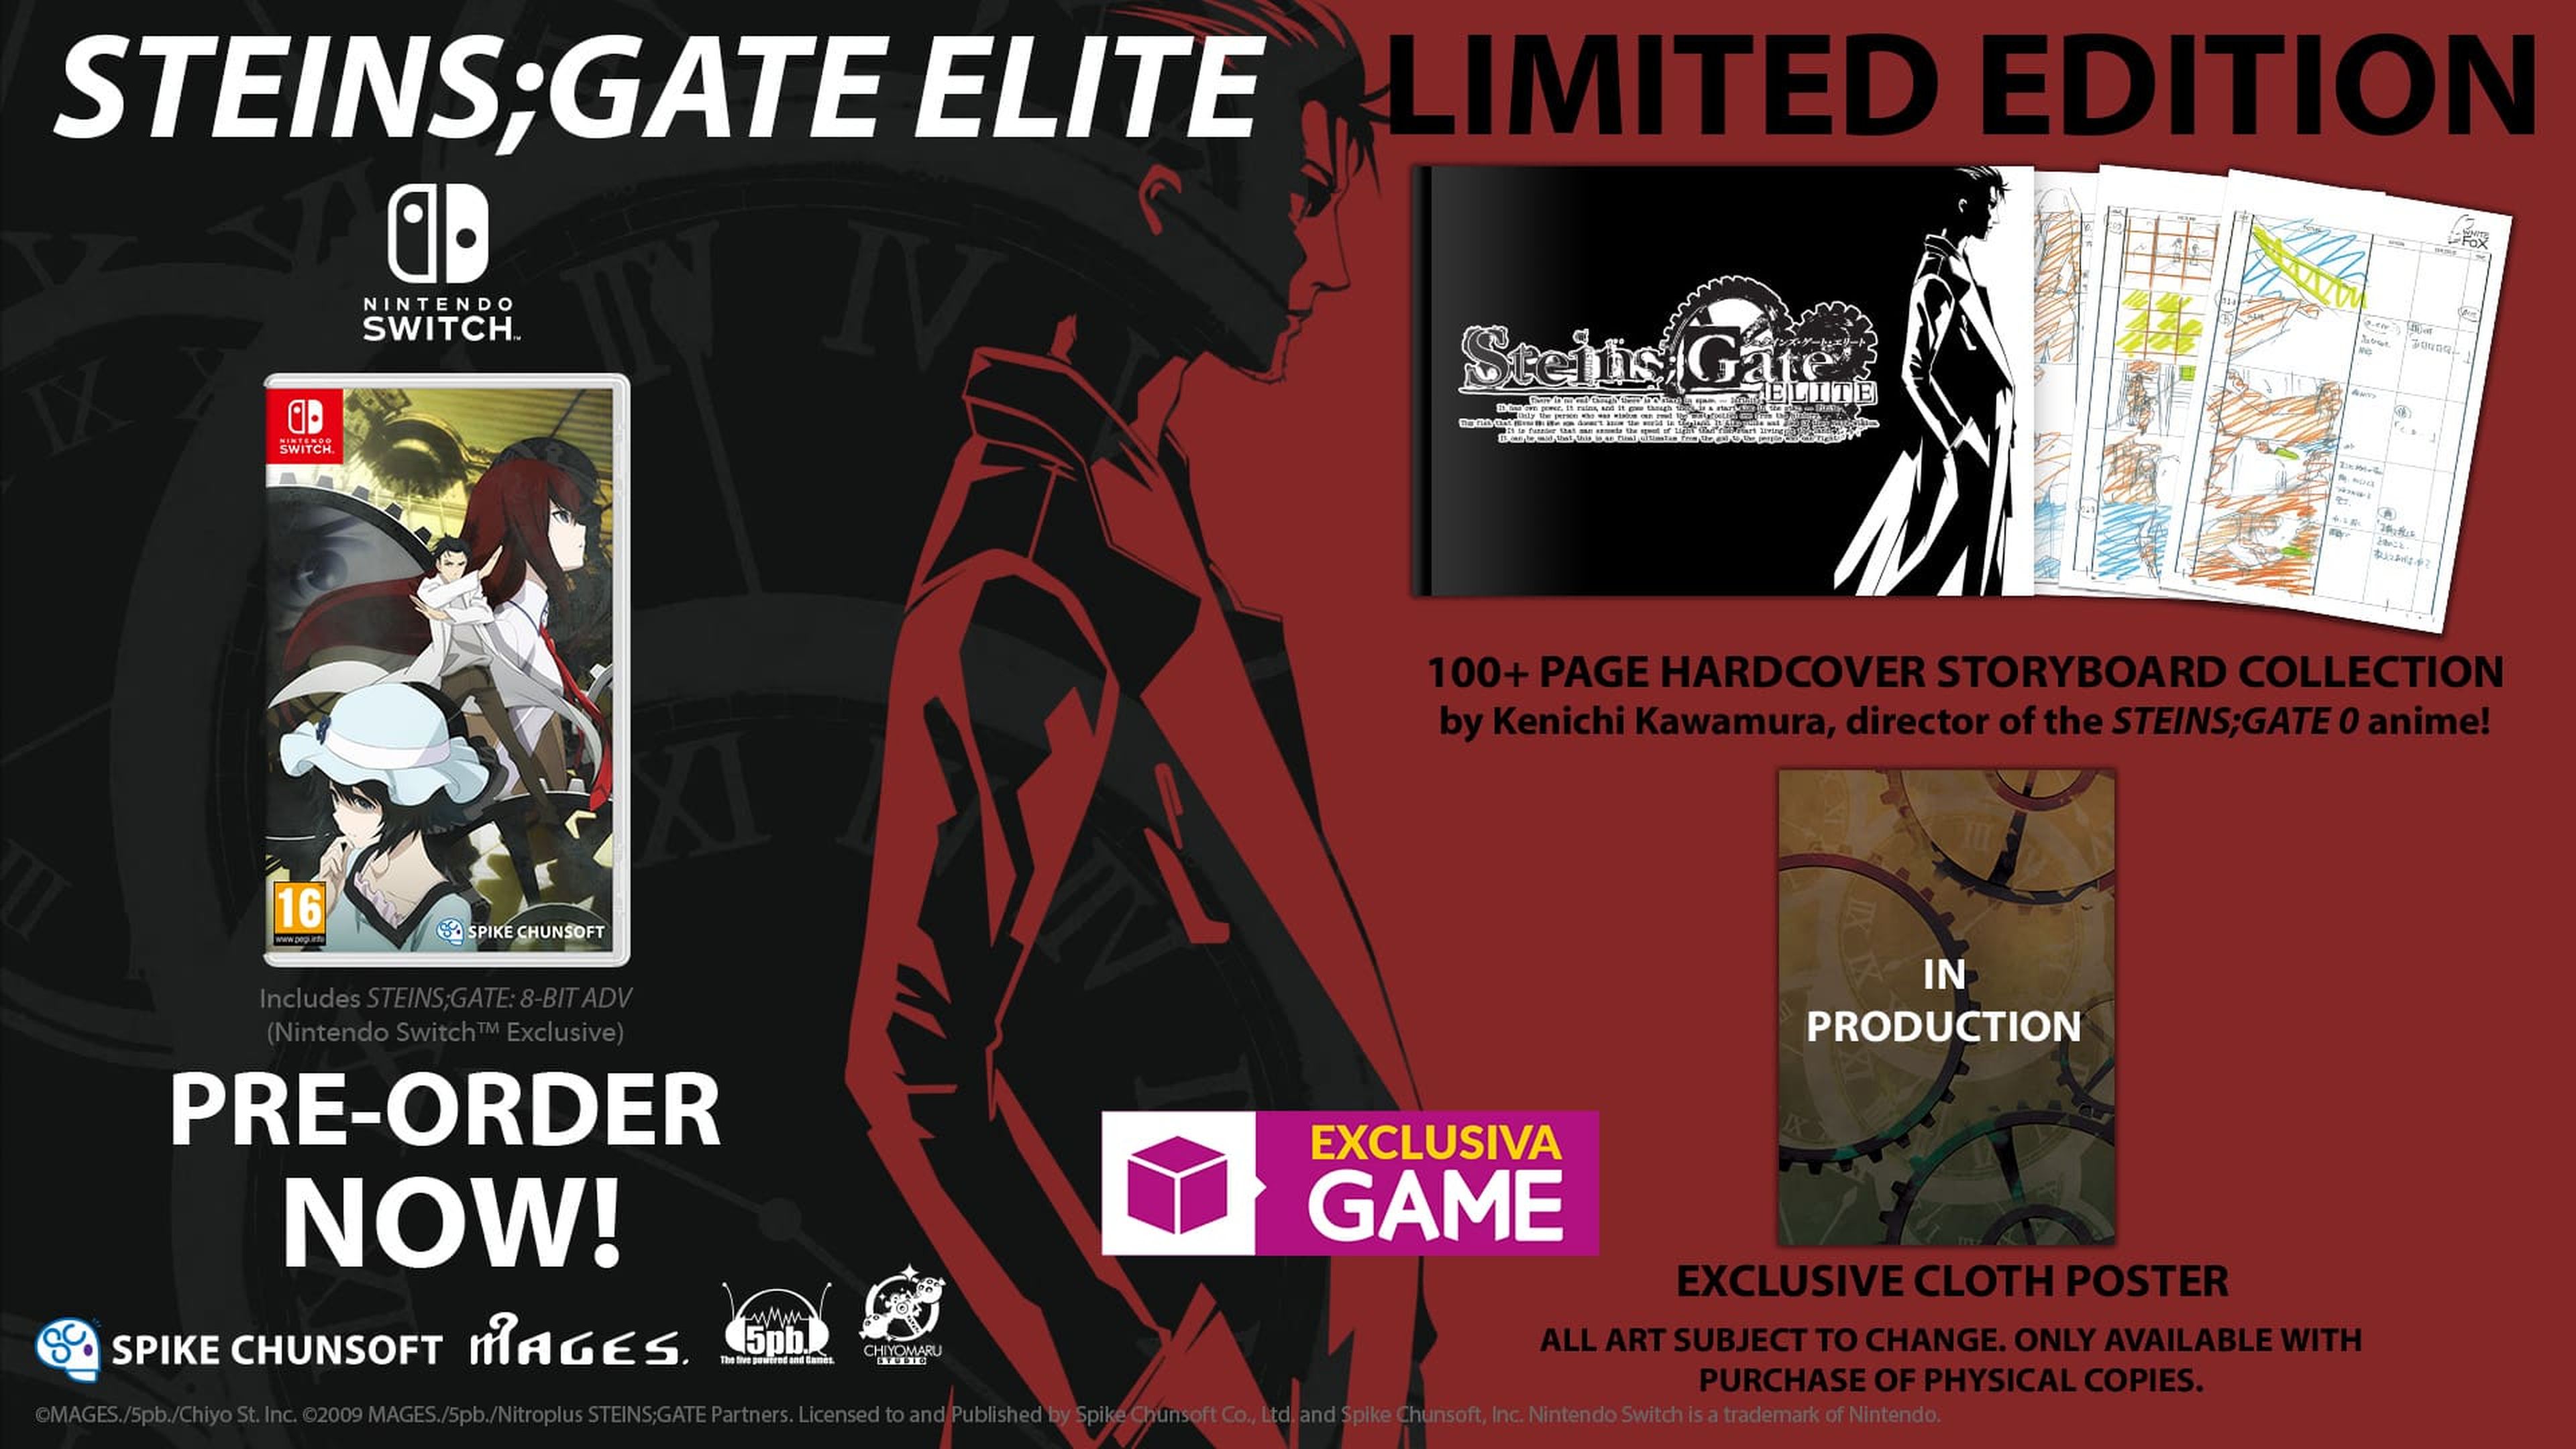 Steins;Gate Elite Limited Edition